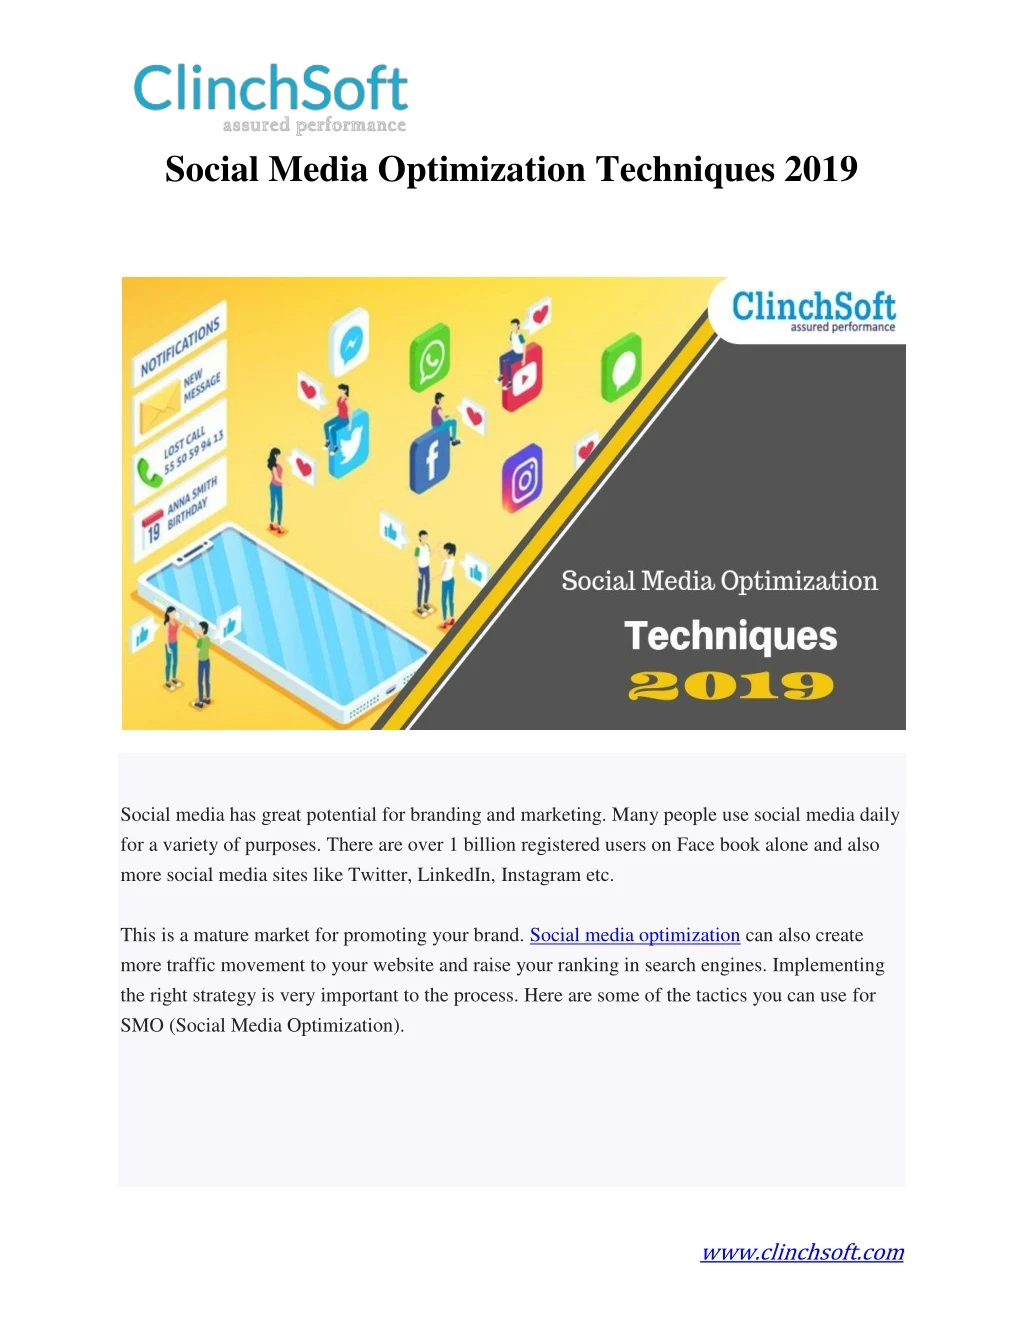 social media optimization techniques 2019